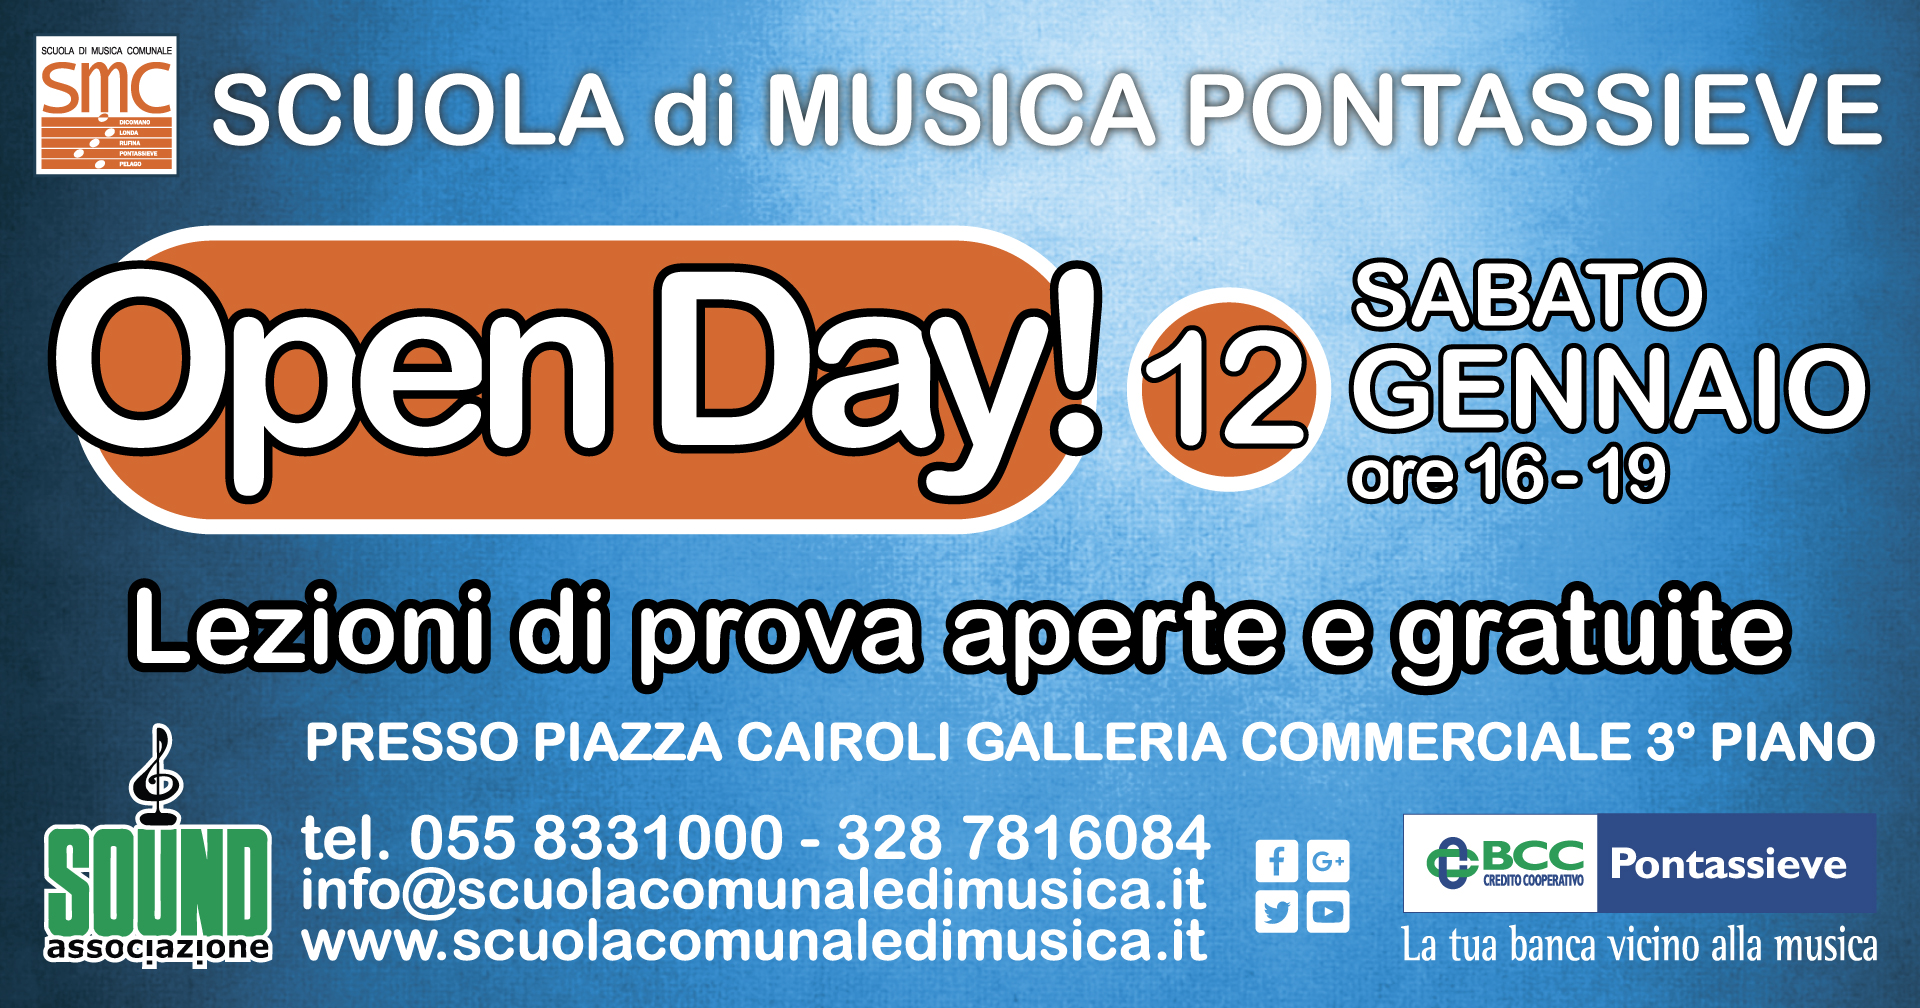 Open Day Scuola di Musica Pontassieve 12 Gennaio 2019